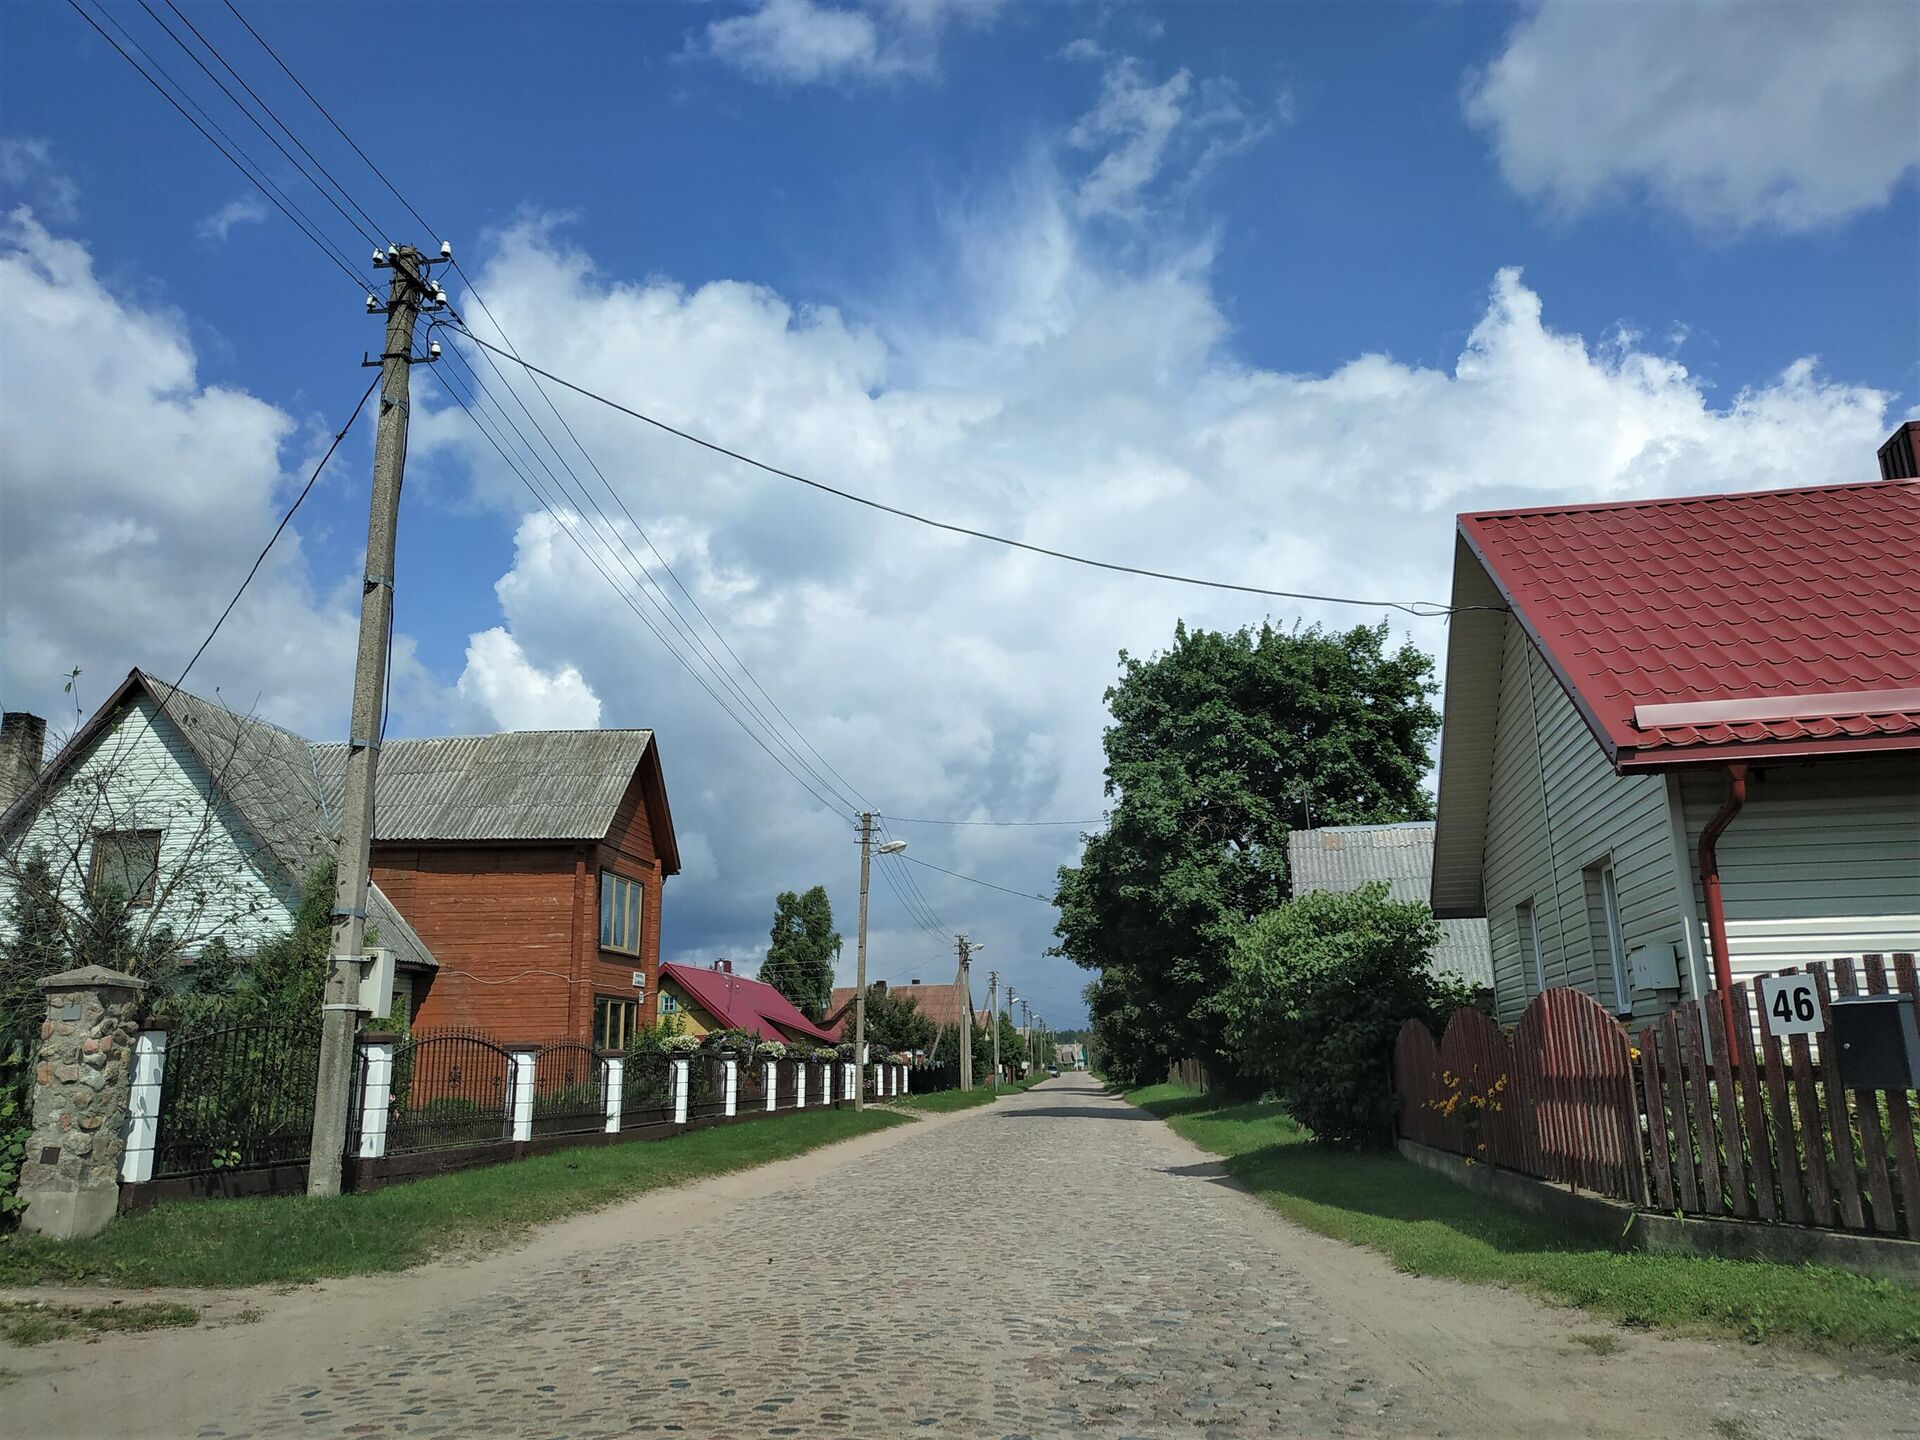 Улица в деревне Руднинкай в Шальчининкайском районе Литвы - Sputnik Lietuva, 1920, 30.08.2021